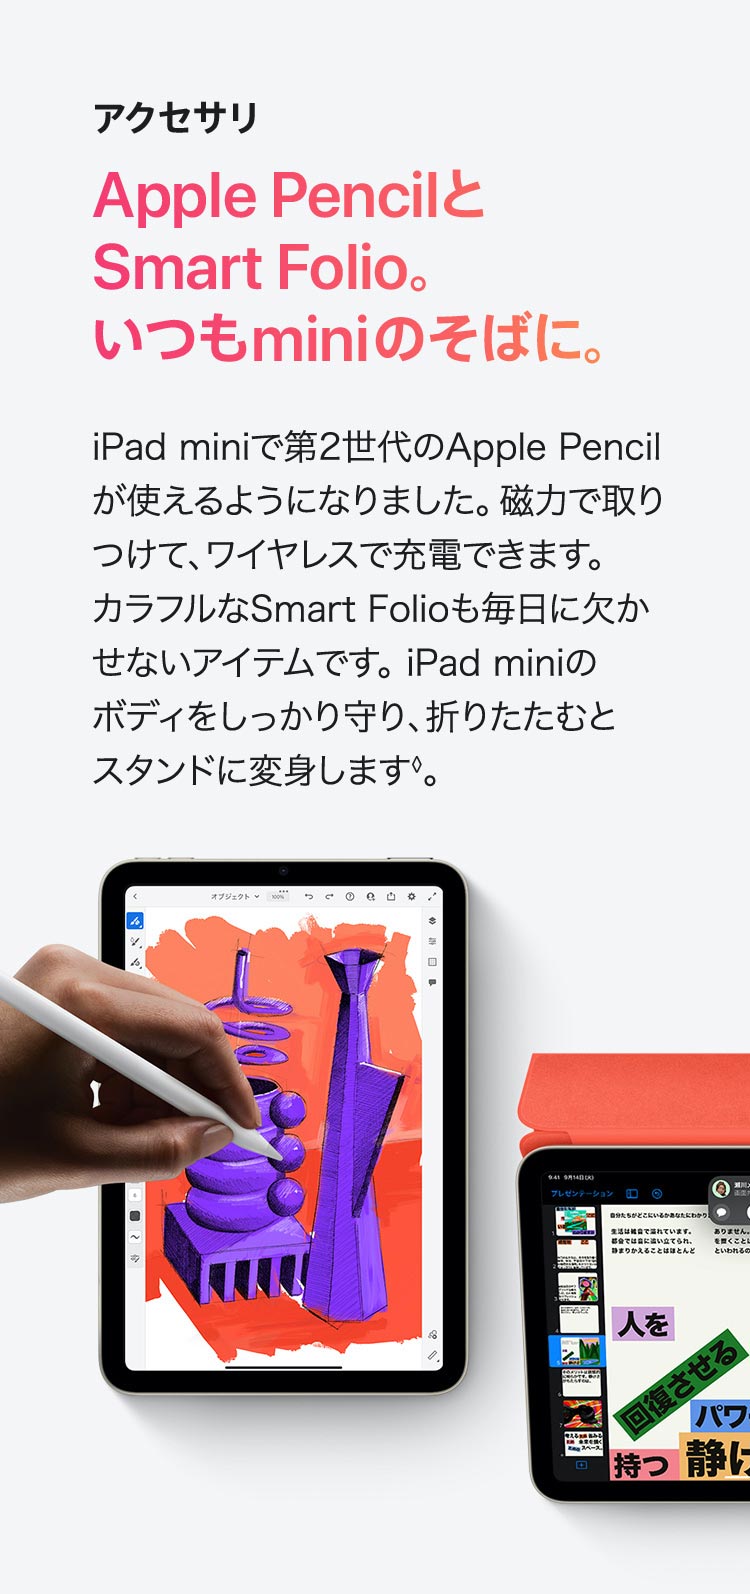 アクセサリ  Apple PencilとSmart Folio。いつもminiのそばに。 iPad mini で第2世代のApple Pencilが 使えるようになりました。磁力で取りつけて、 ワイヤレスで充電できます。カラフルな Smart Folioも毎日に欠かせないアイテム です。iPad mini のボディをしっかり守り、 折りたたむとスタンドに変身します◊。